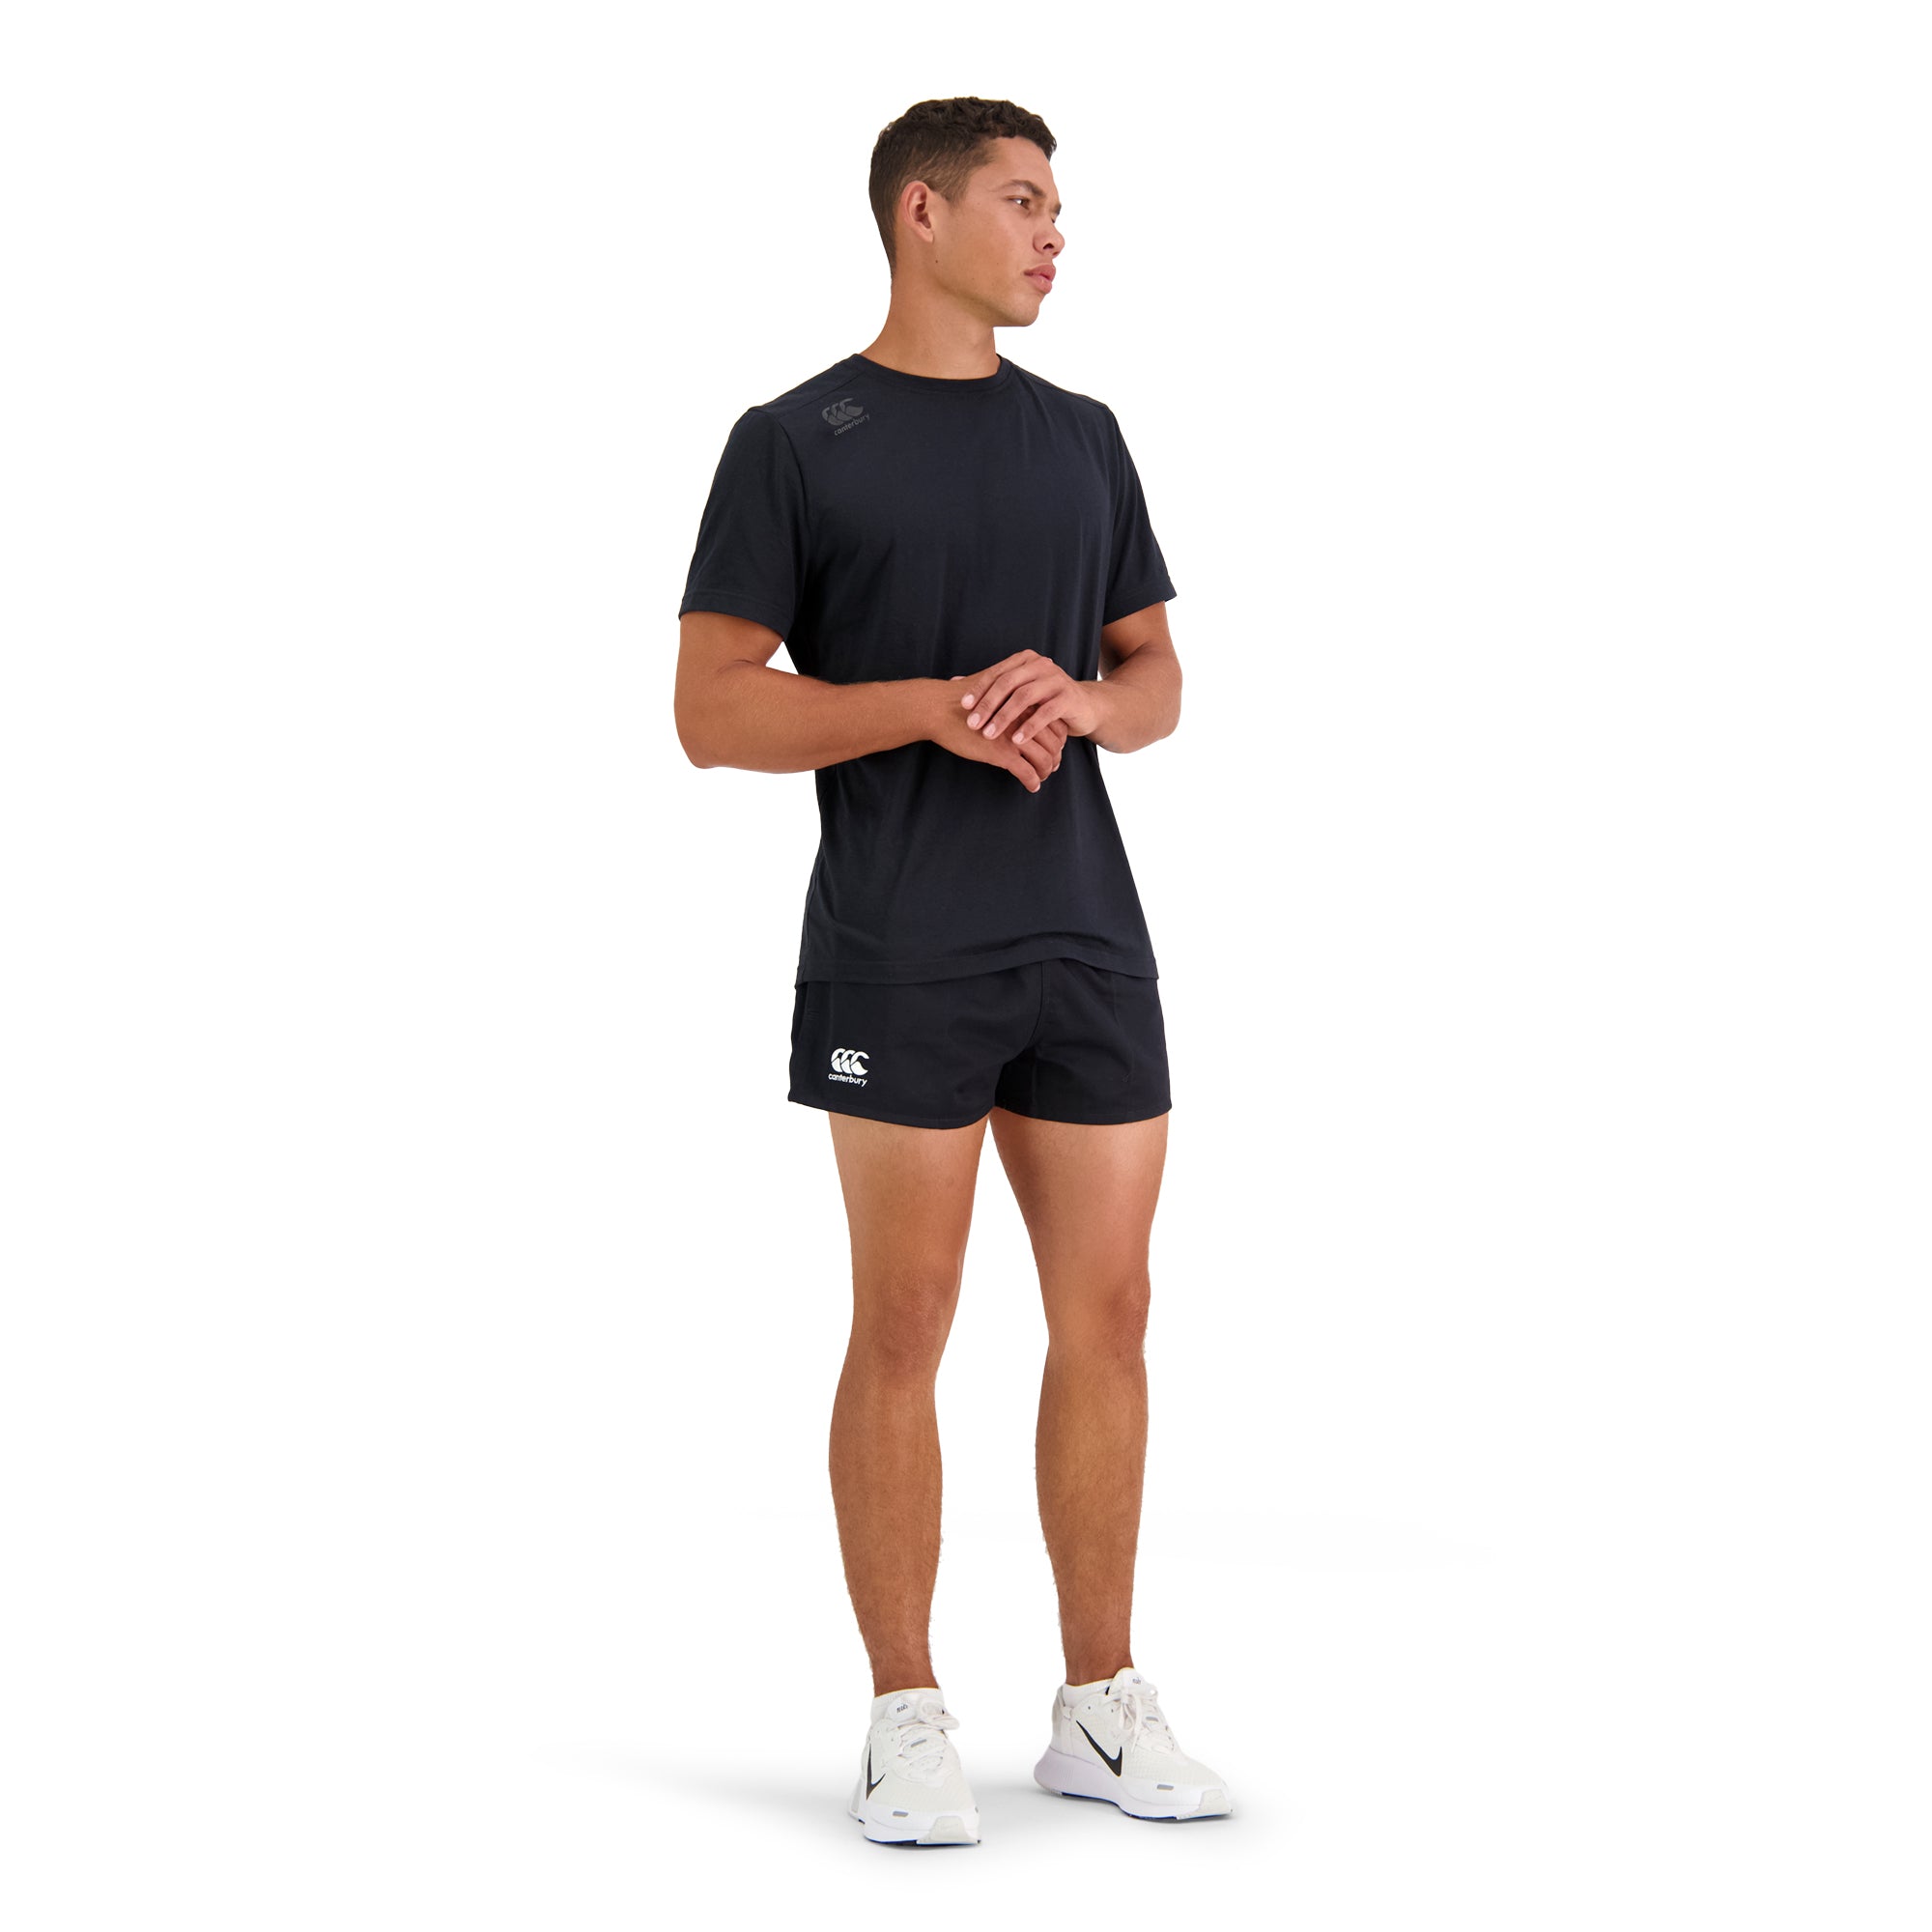 Canterbury Mens Gym Shorts - Black